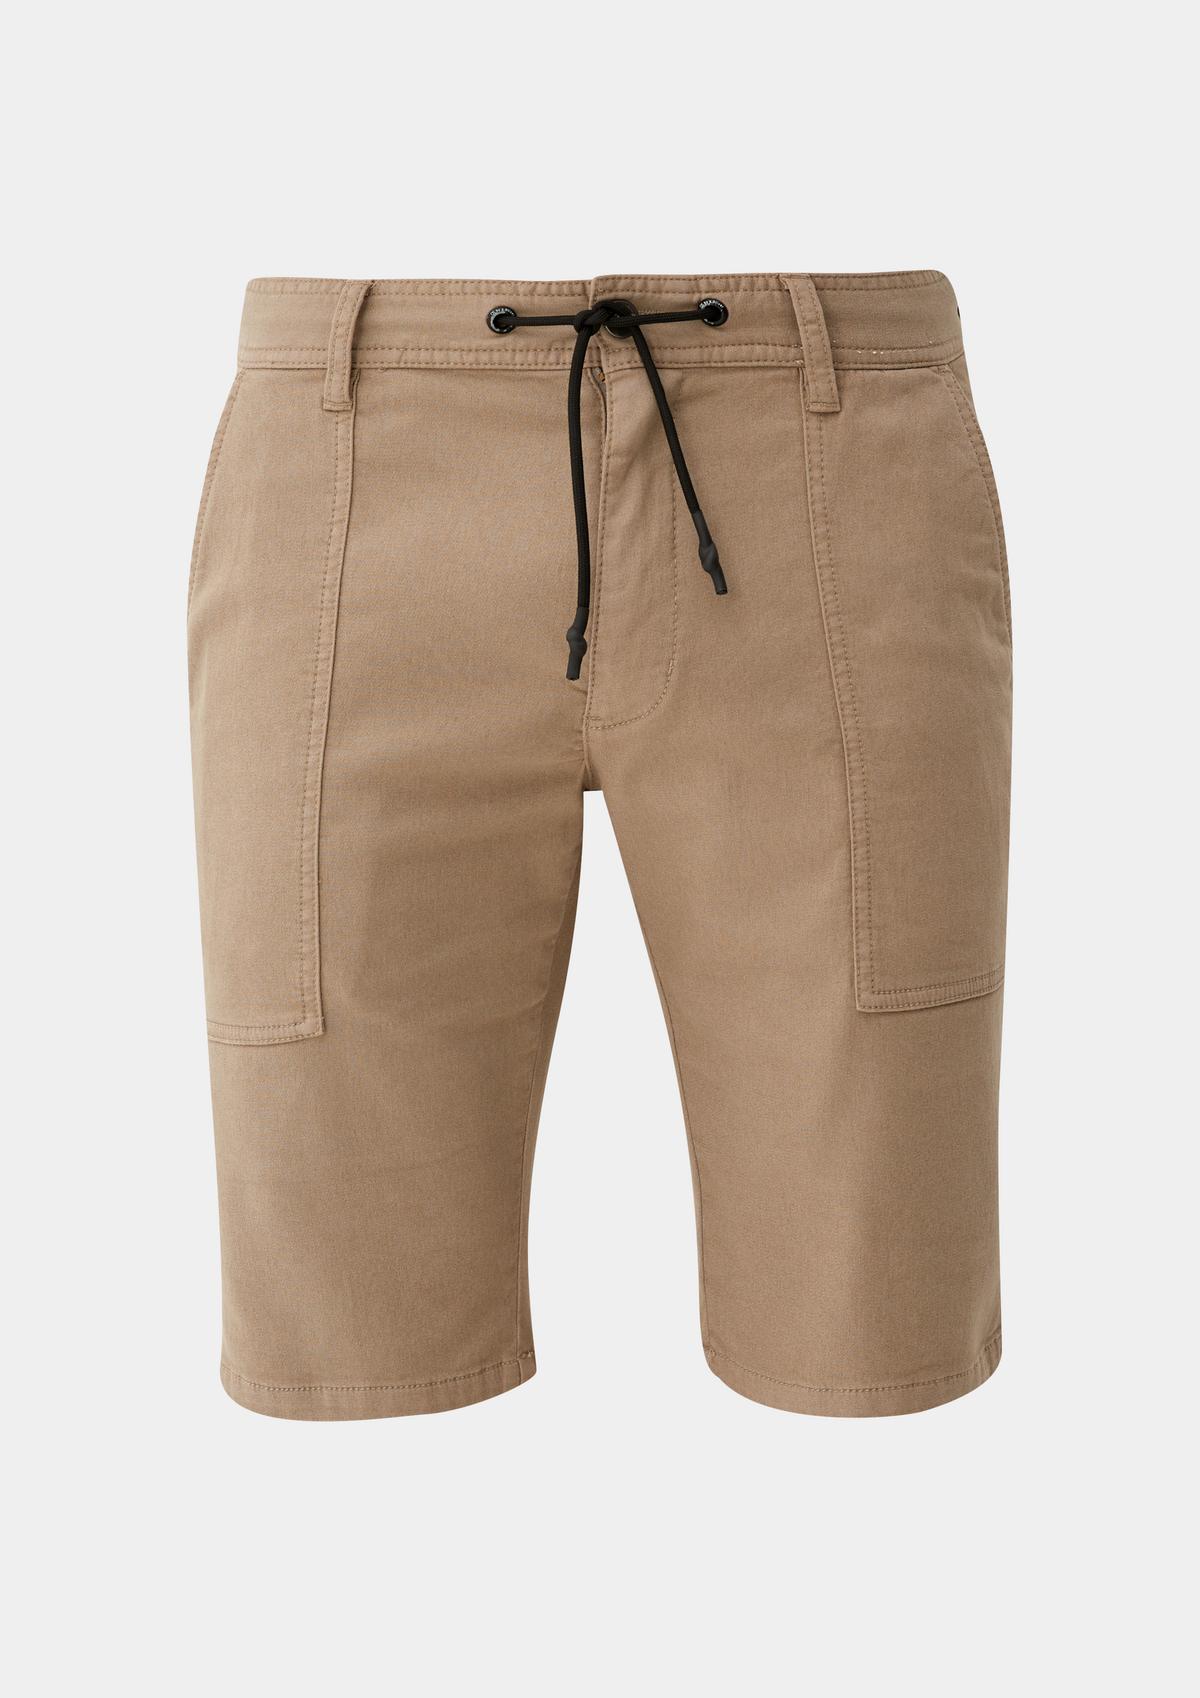 Shorts Plain for Men